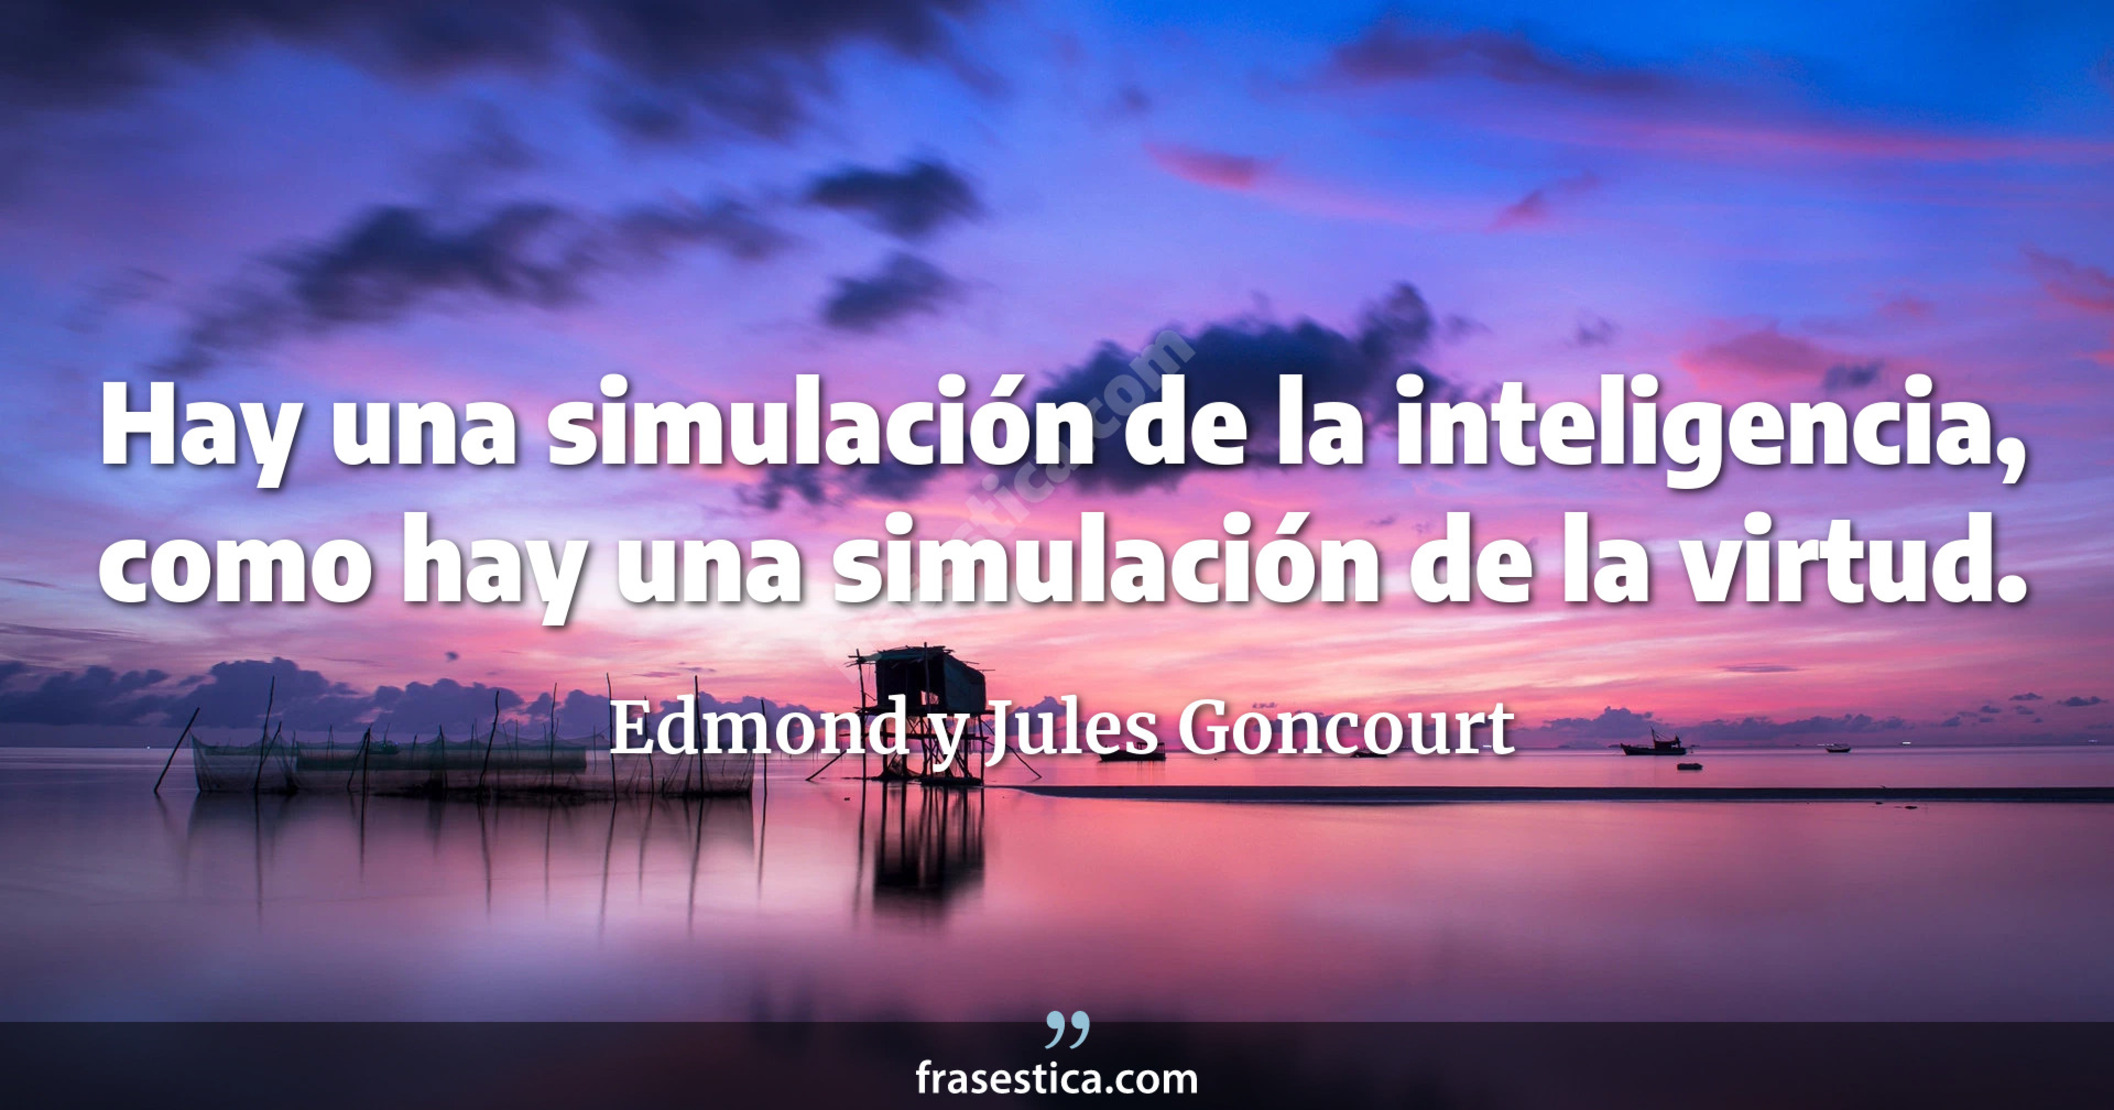 Hay una simulación de la inteligencia, como hay una simulación de la virtud. - Edmond y Jules Goncourt